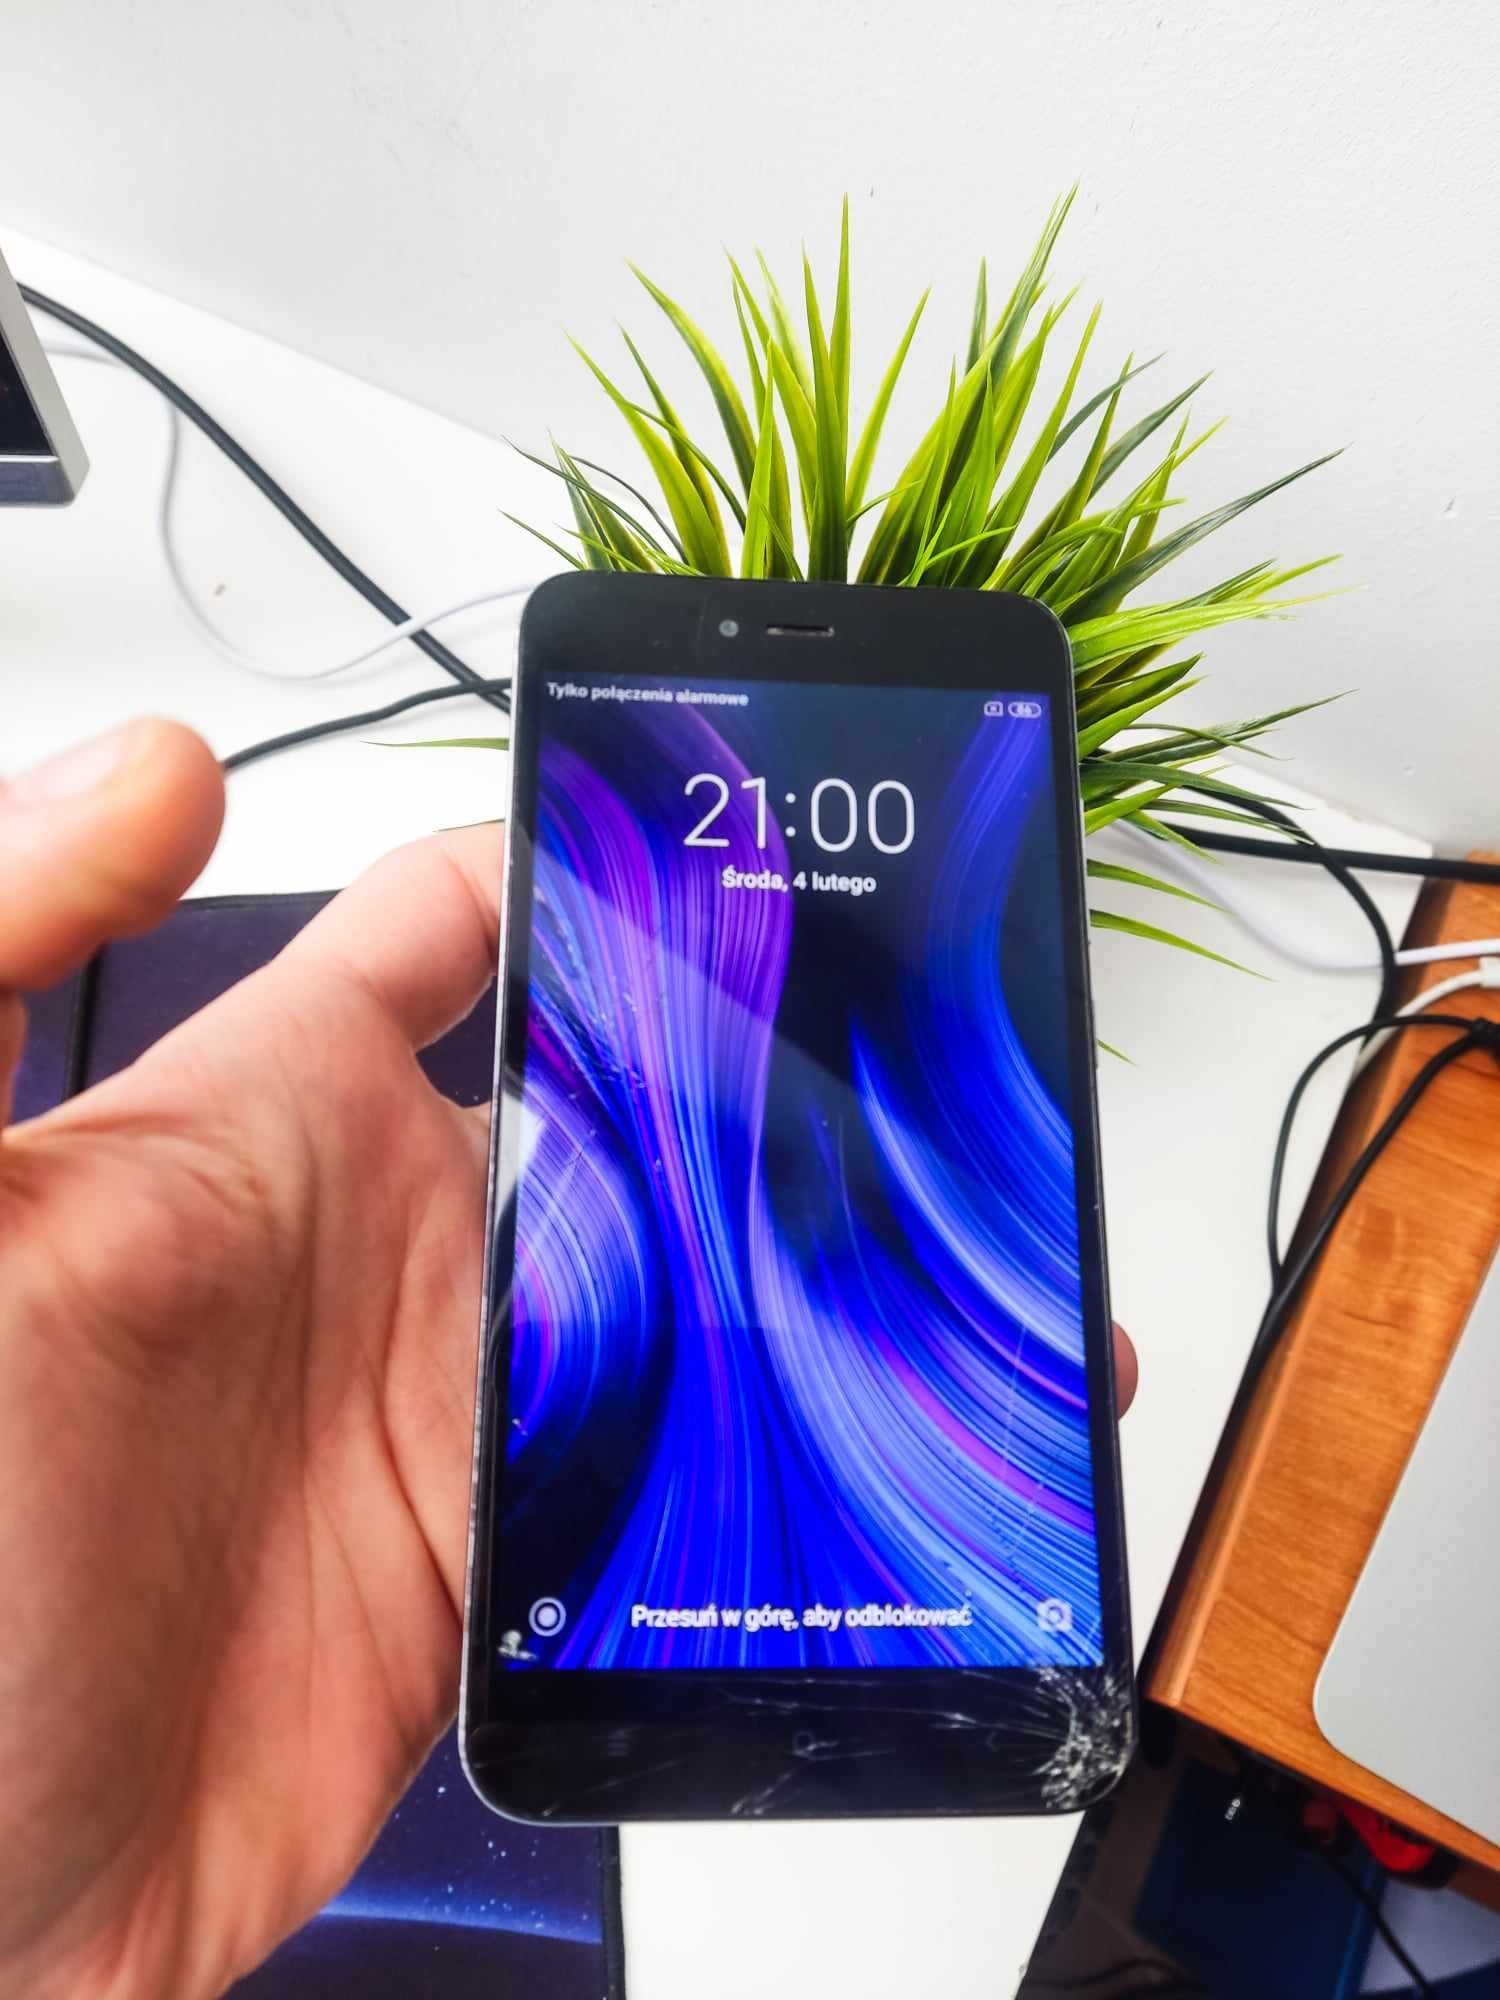 Smartfon XIaomi Redmi Note 5A zbita szybka